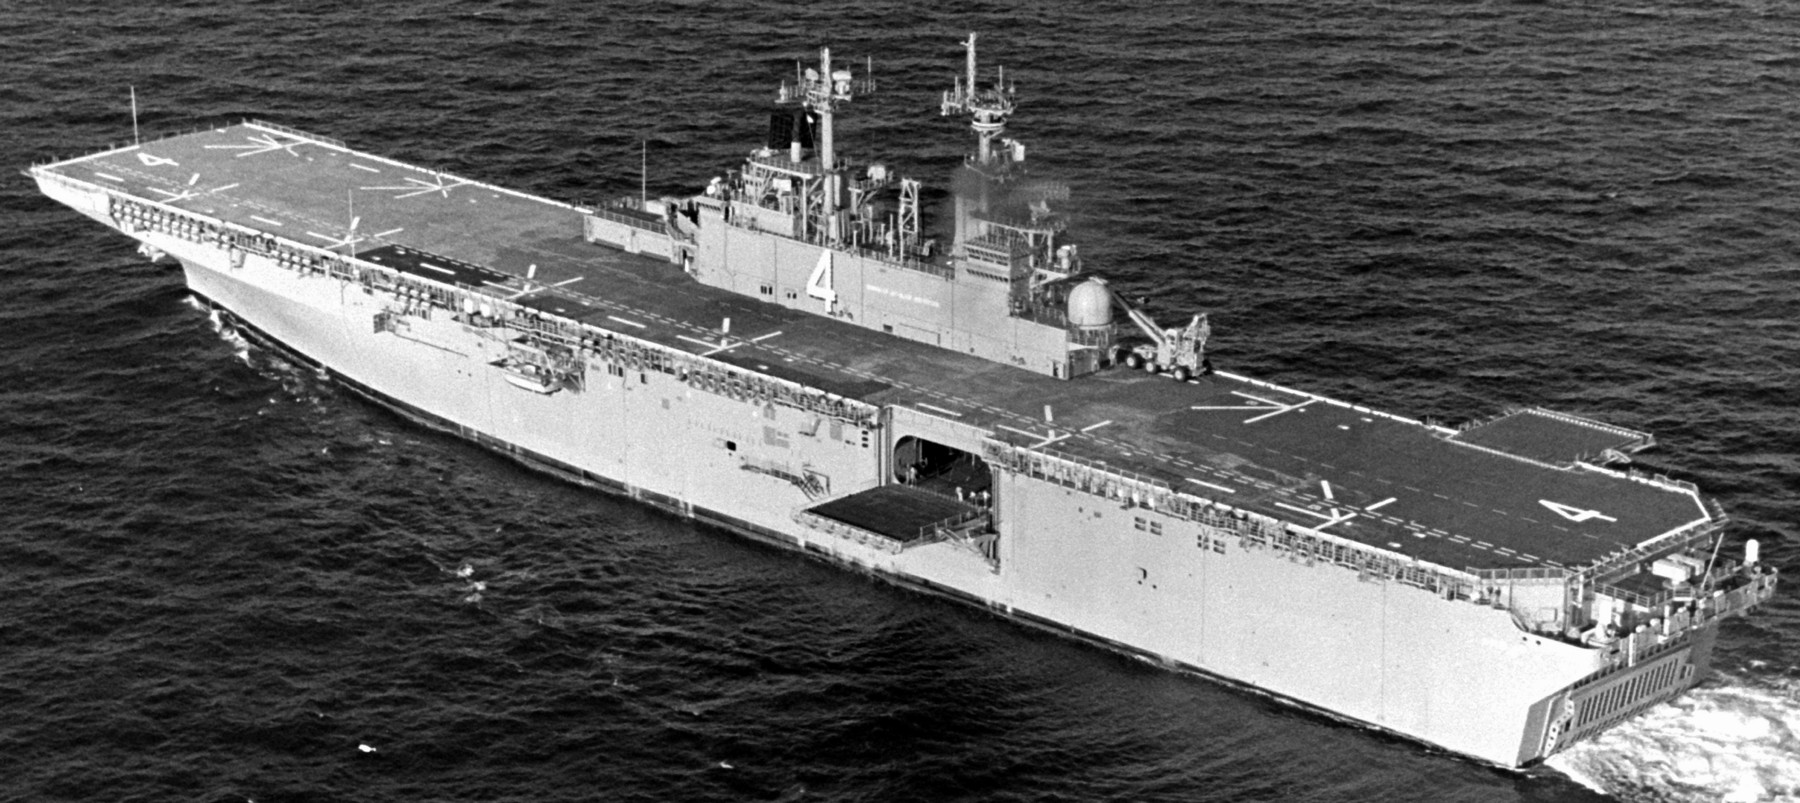 lhd-4 uss boxer wasp class amphibious assault ship dock landing us navy trials gulf of mexico 10